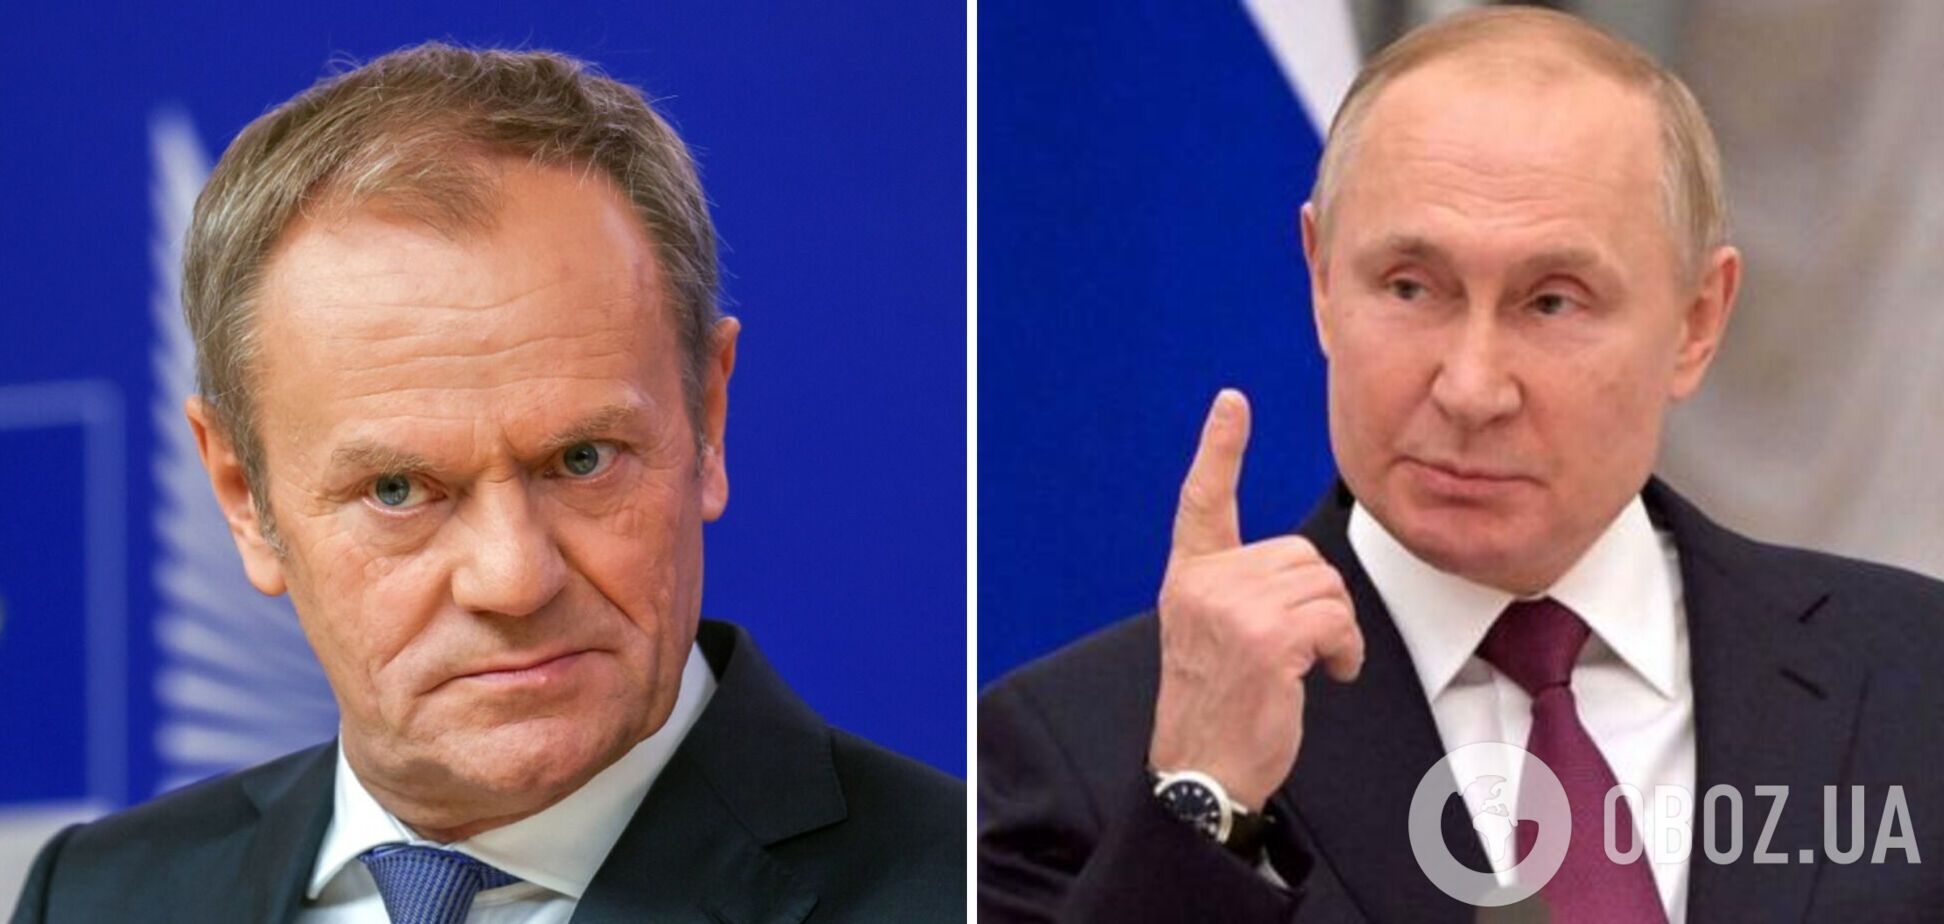 Туск: слова Путина следует воспринимать всерьез, Европа должна принимать решение